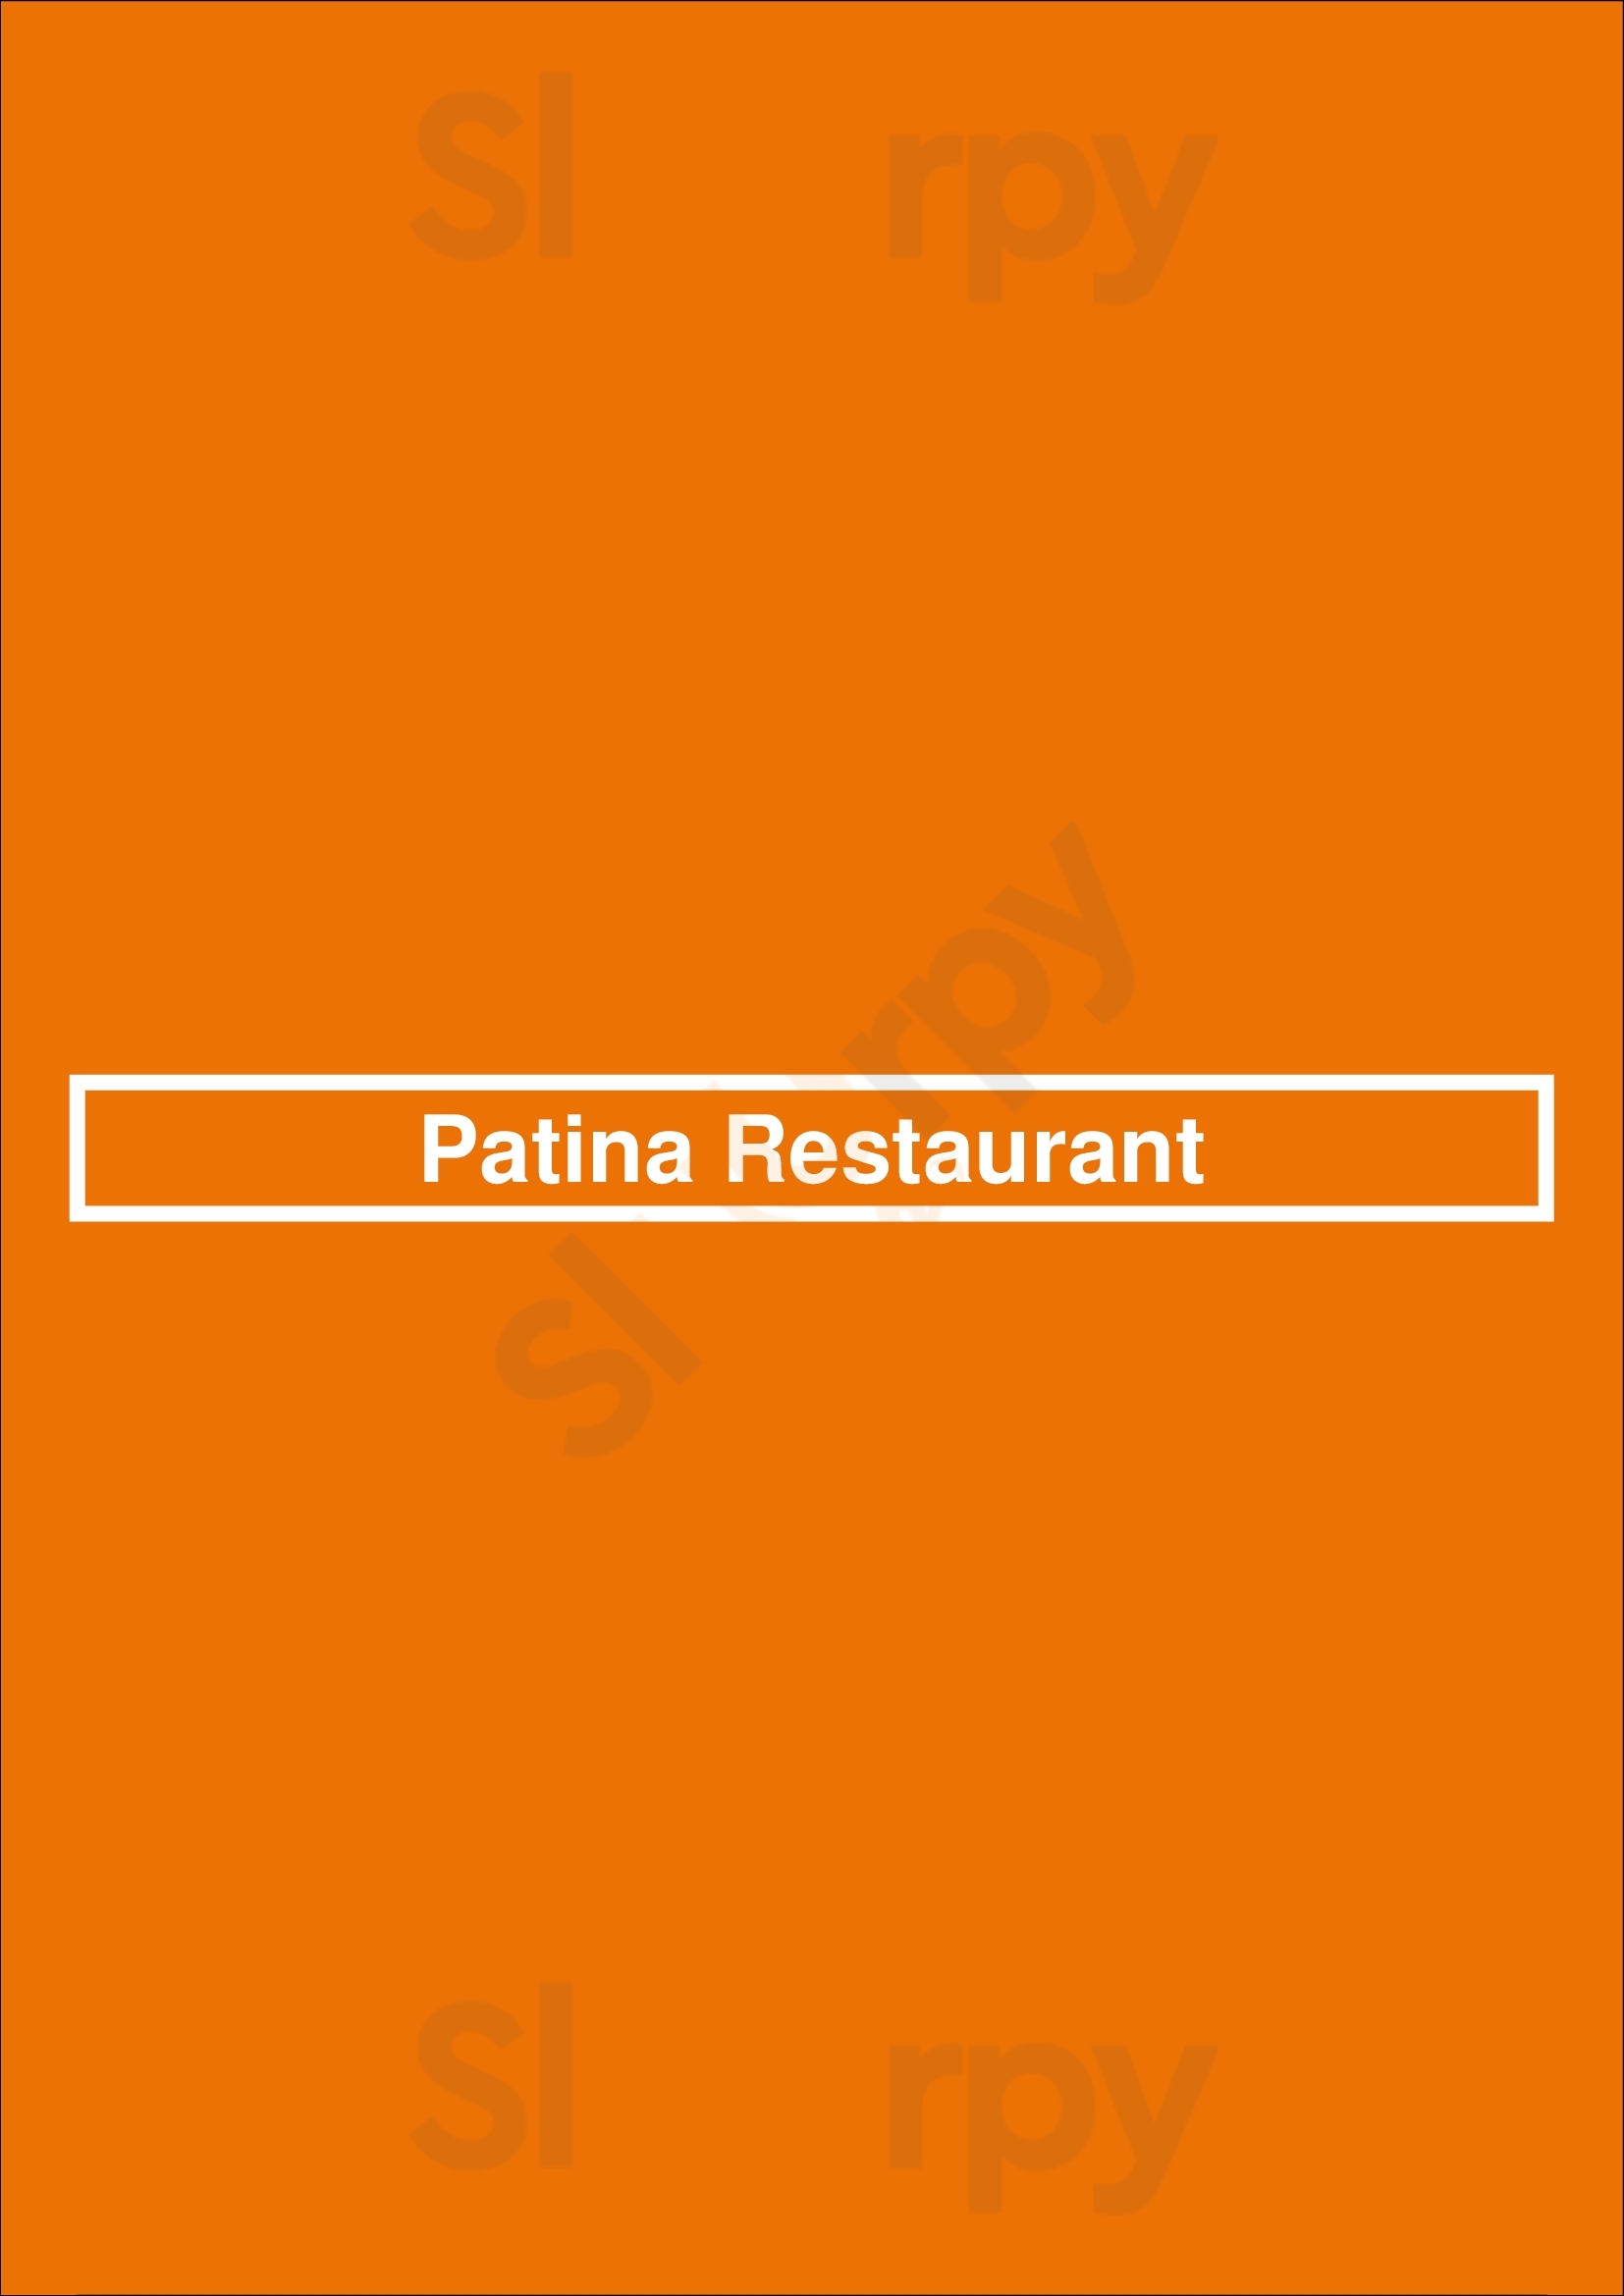 Patina Restaurant Los Angeles Menu - 1